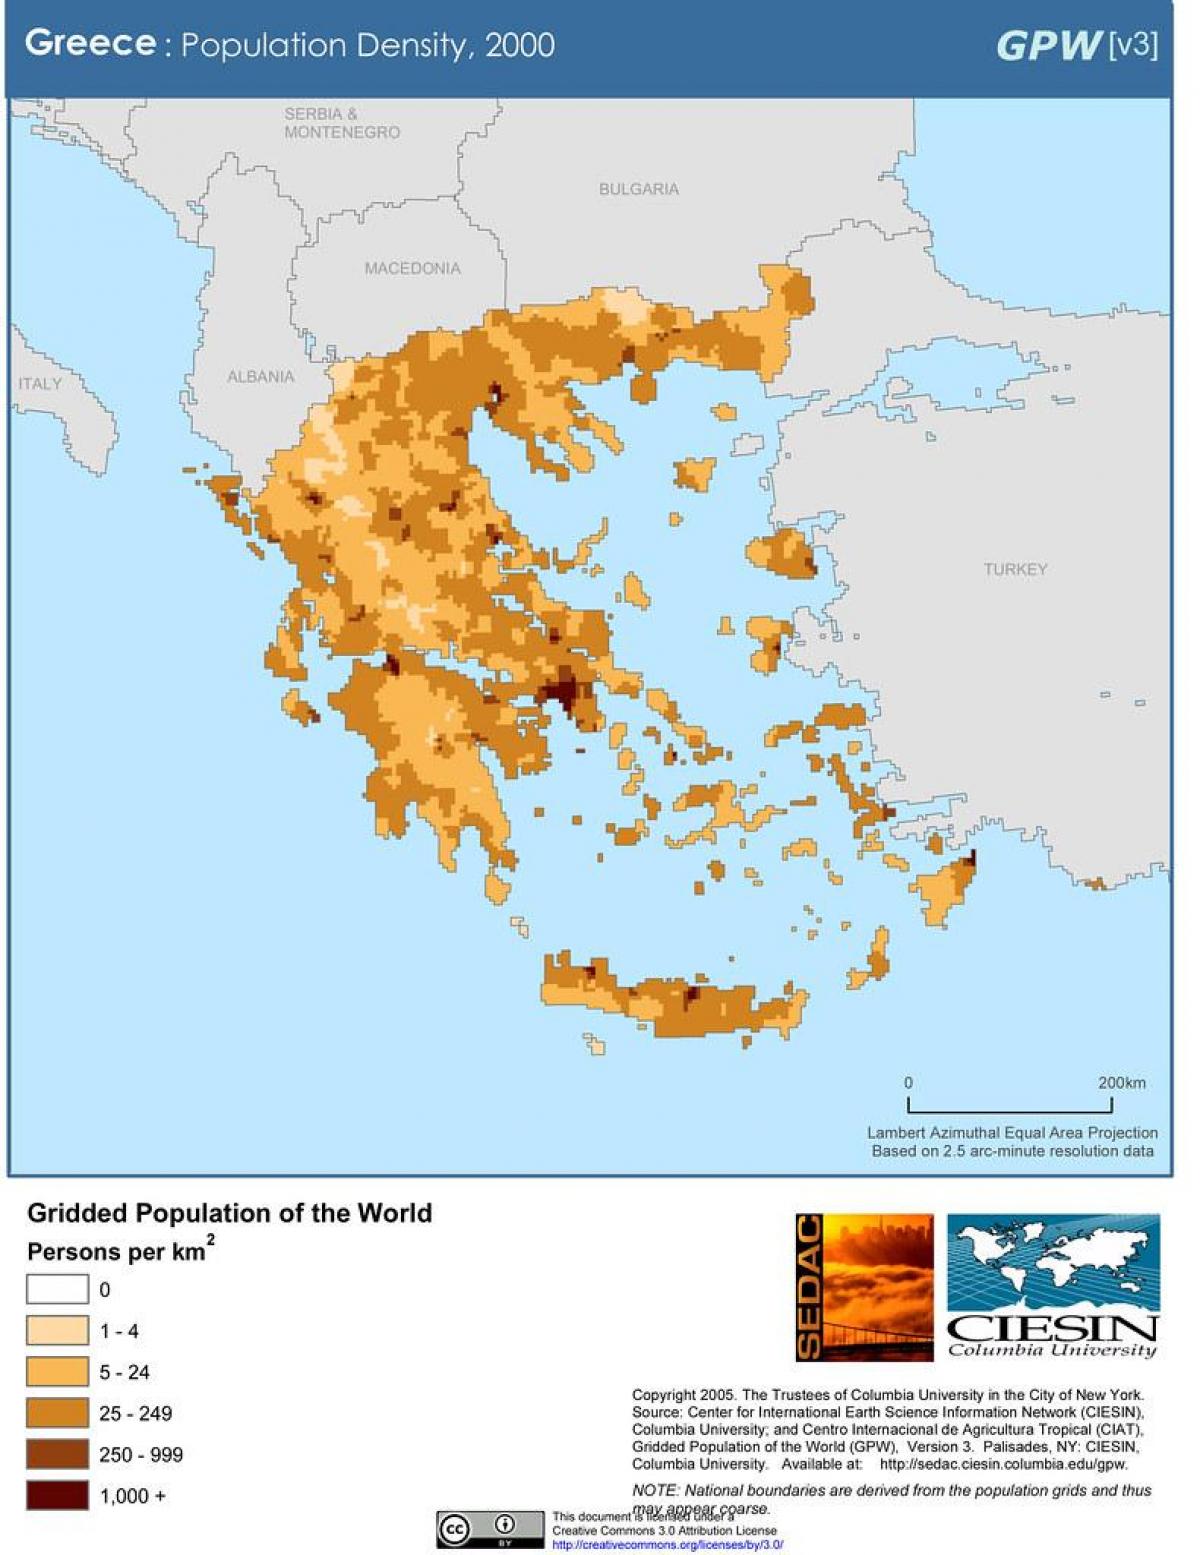 Mappa della densità della Grecia